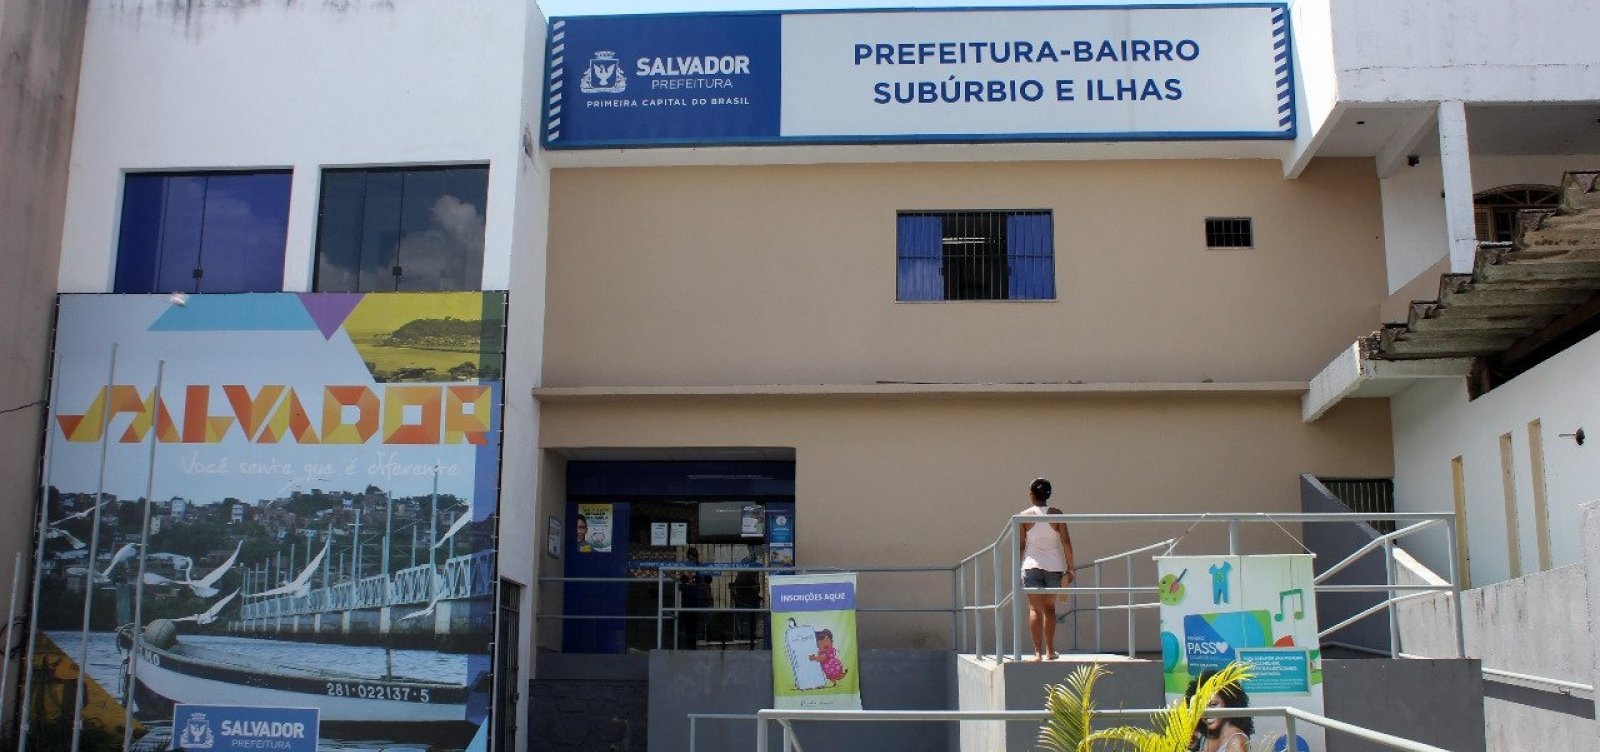  Mutirão oferece serviços jurídicos no Subúrbio